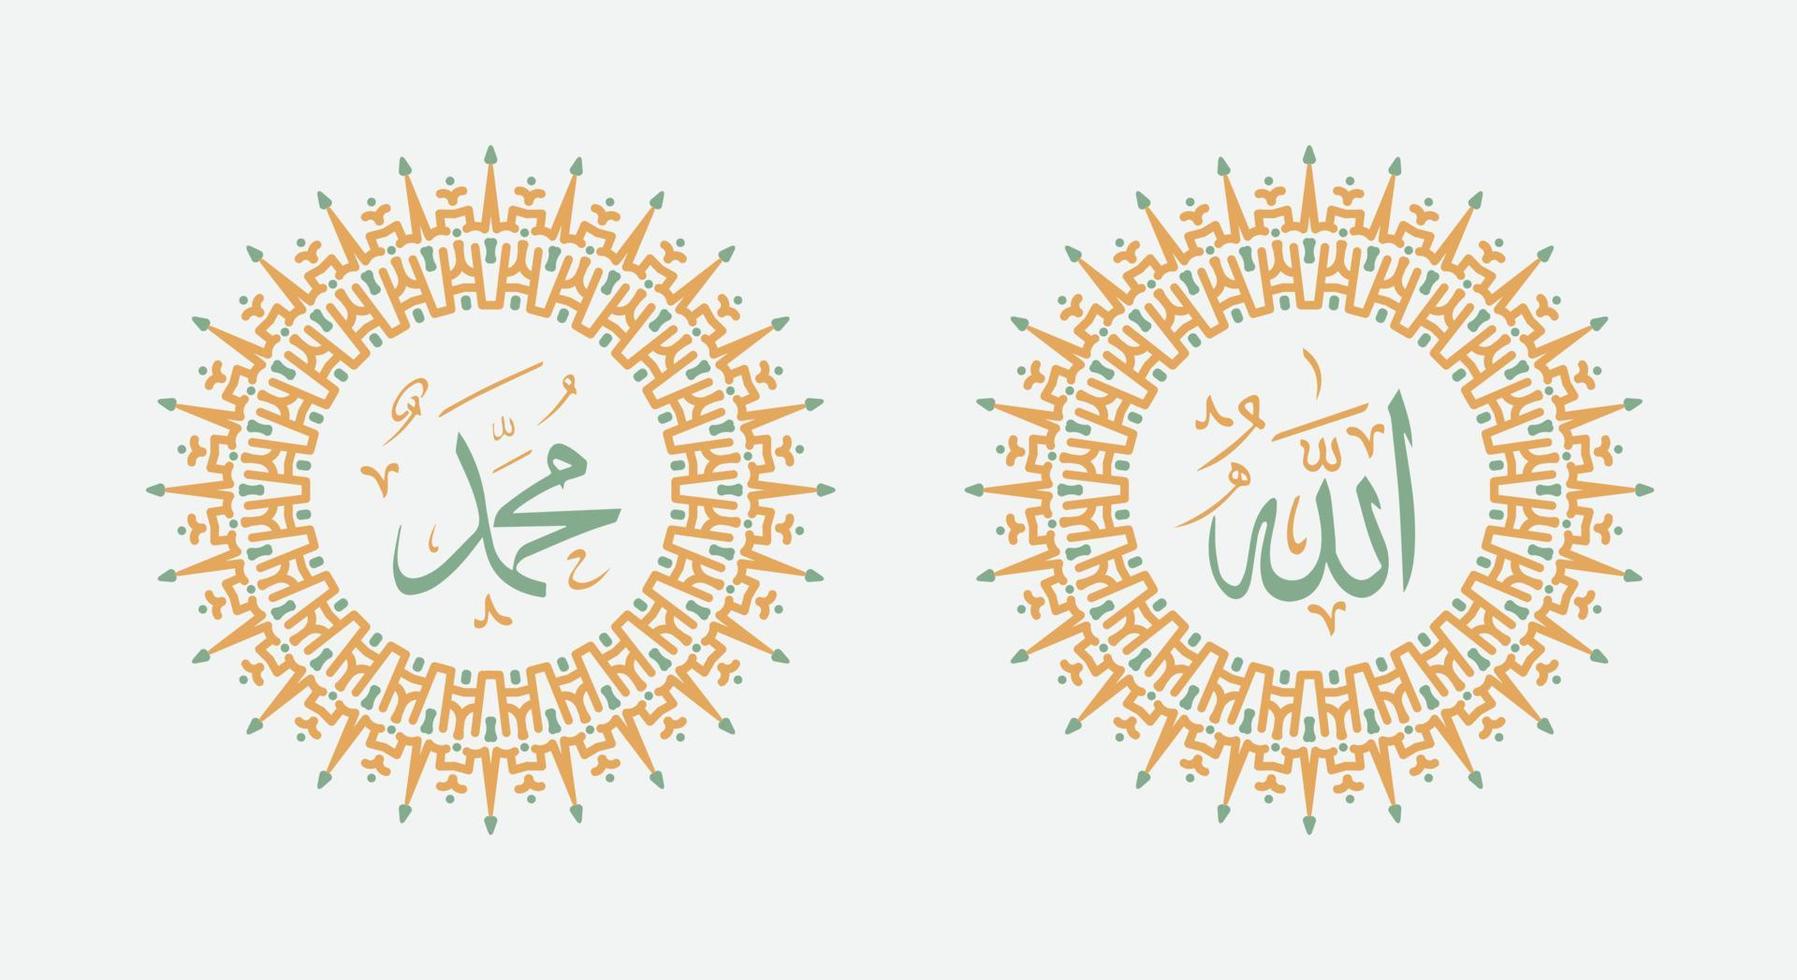 allah muhammad nombre de allah muhammad, arte de caligrafía islámica árabe de allah muhammad, con marco tradicional y elegante color retro vector